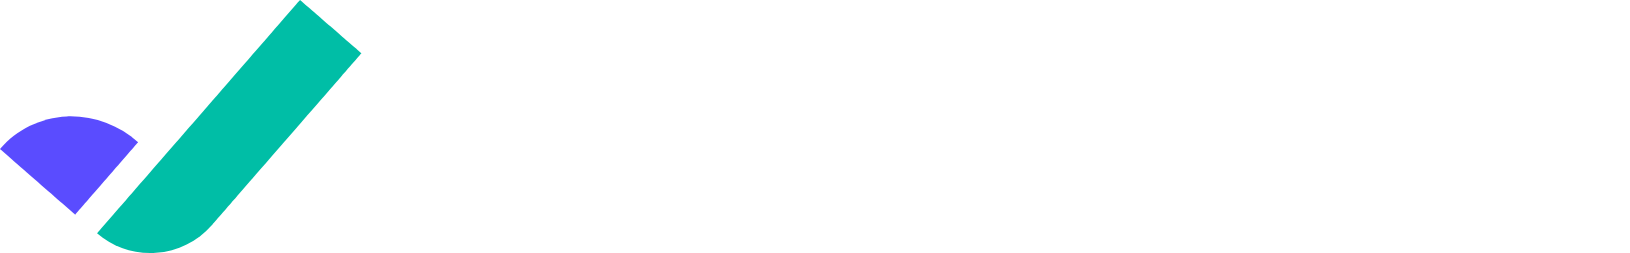 Riskified Logo groß für dunkle Hintergründe (transparentes PNG)